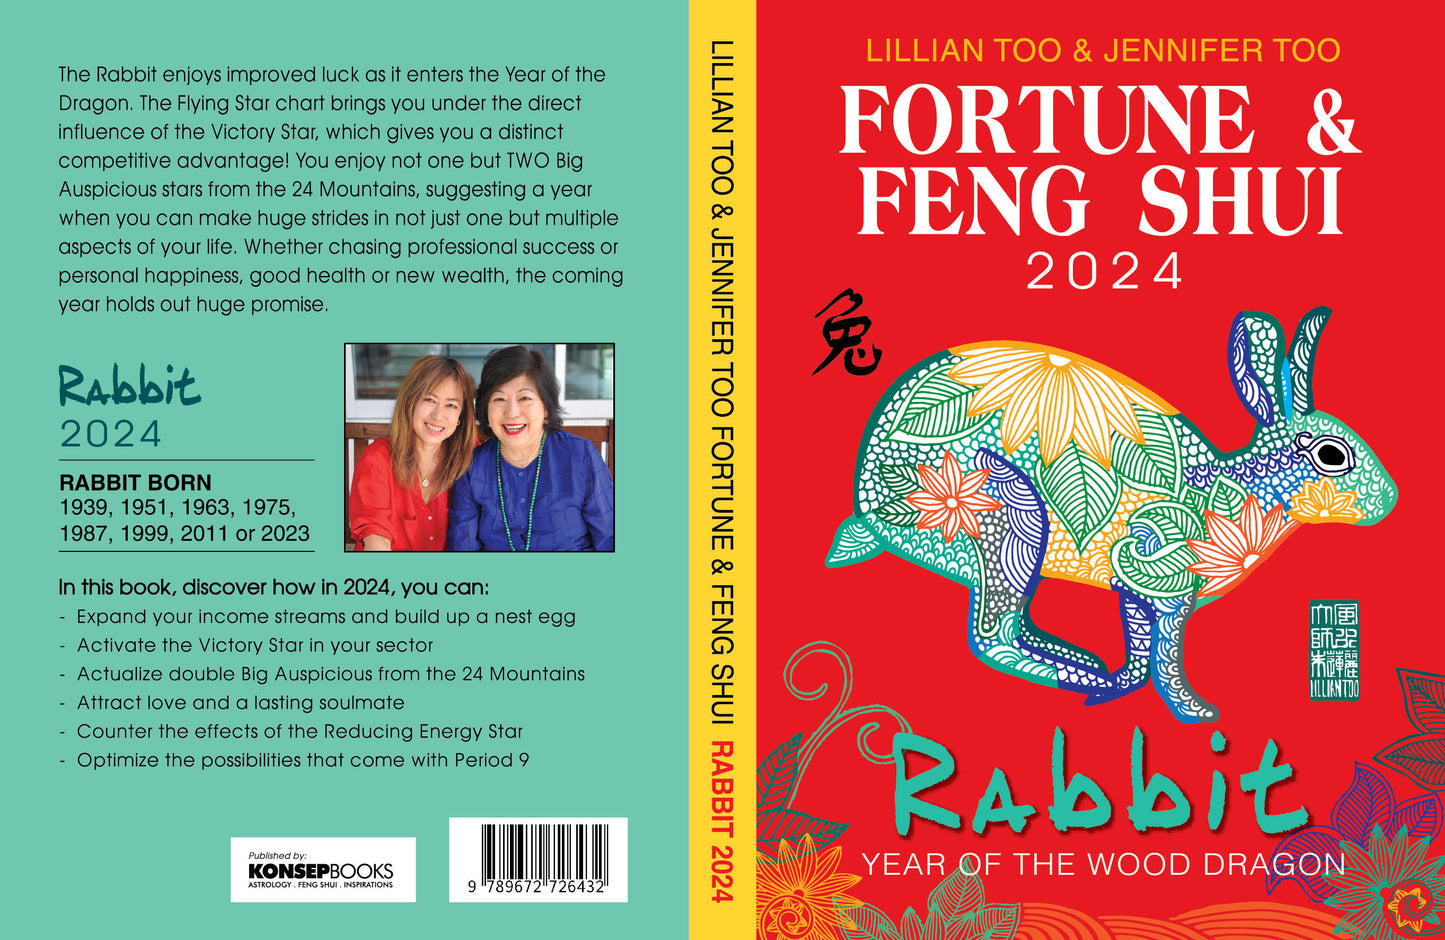 3 BOOKS COMBO - RABBIT - Lillian Too & Jennifer Too Fortune & Feng Shui, Feng Shui Diary, Feng Shui Almanac 2024 - 6732